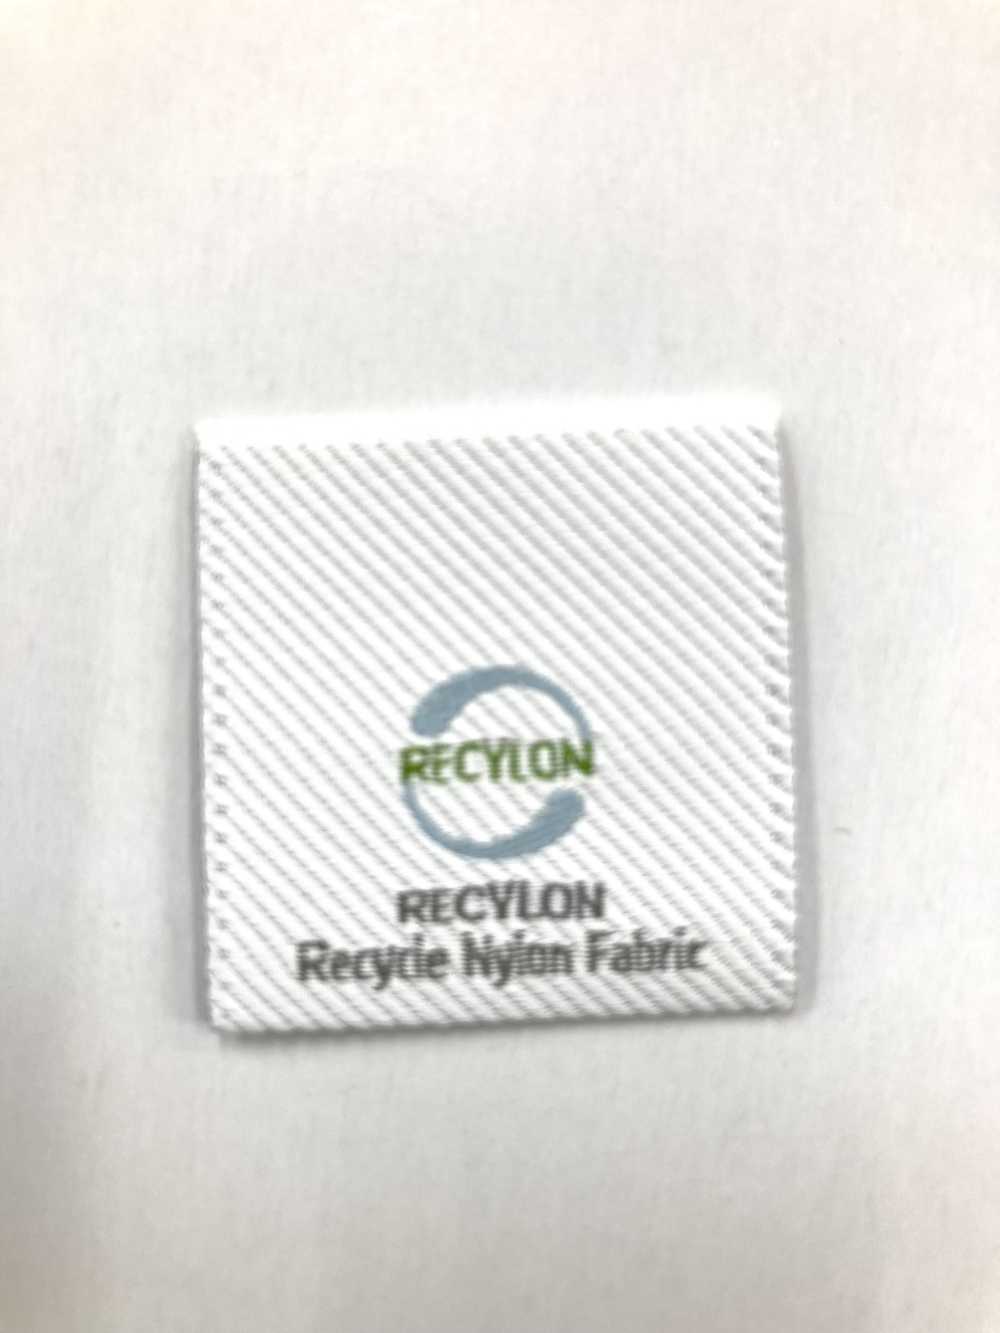 TP004-RYON Etichette Per Etichette Tessute In Recylon[Merci Varie E Altri] Corsa Al Top